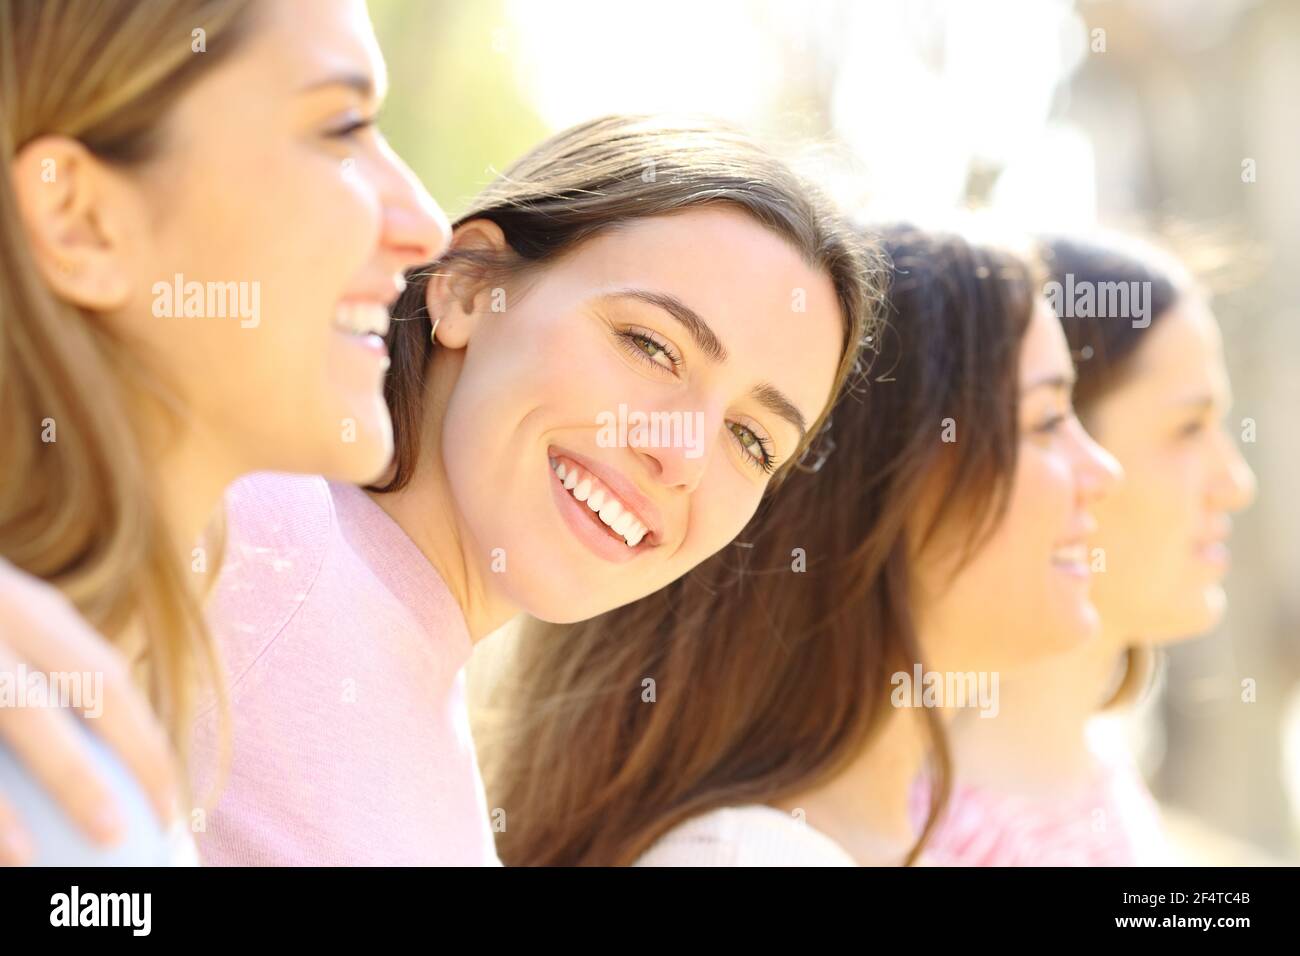 Une femme heureuse avec un sourire parfait se posant entre ses amis la rue un jour ensoleillé Banque D'Images